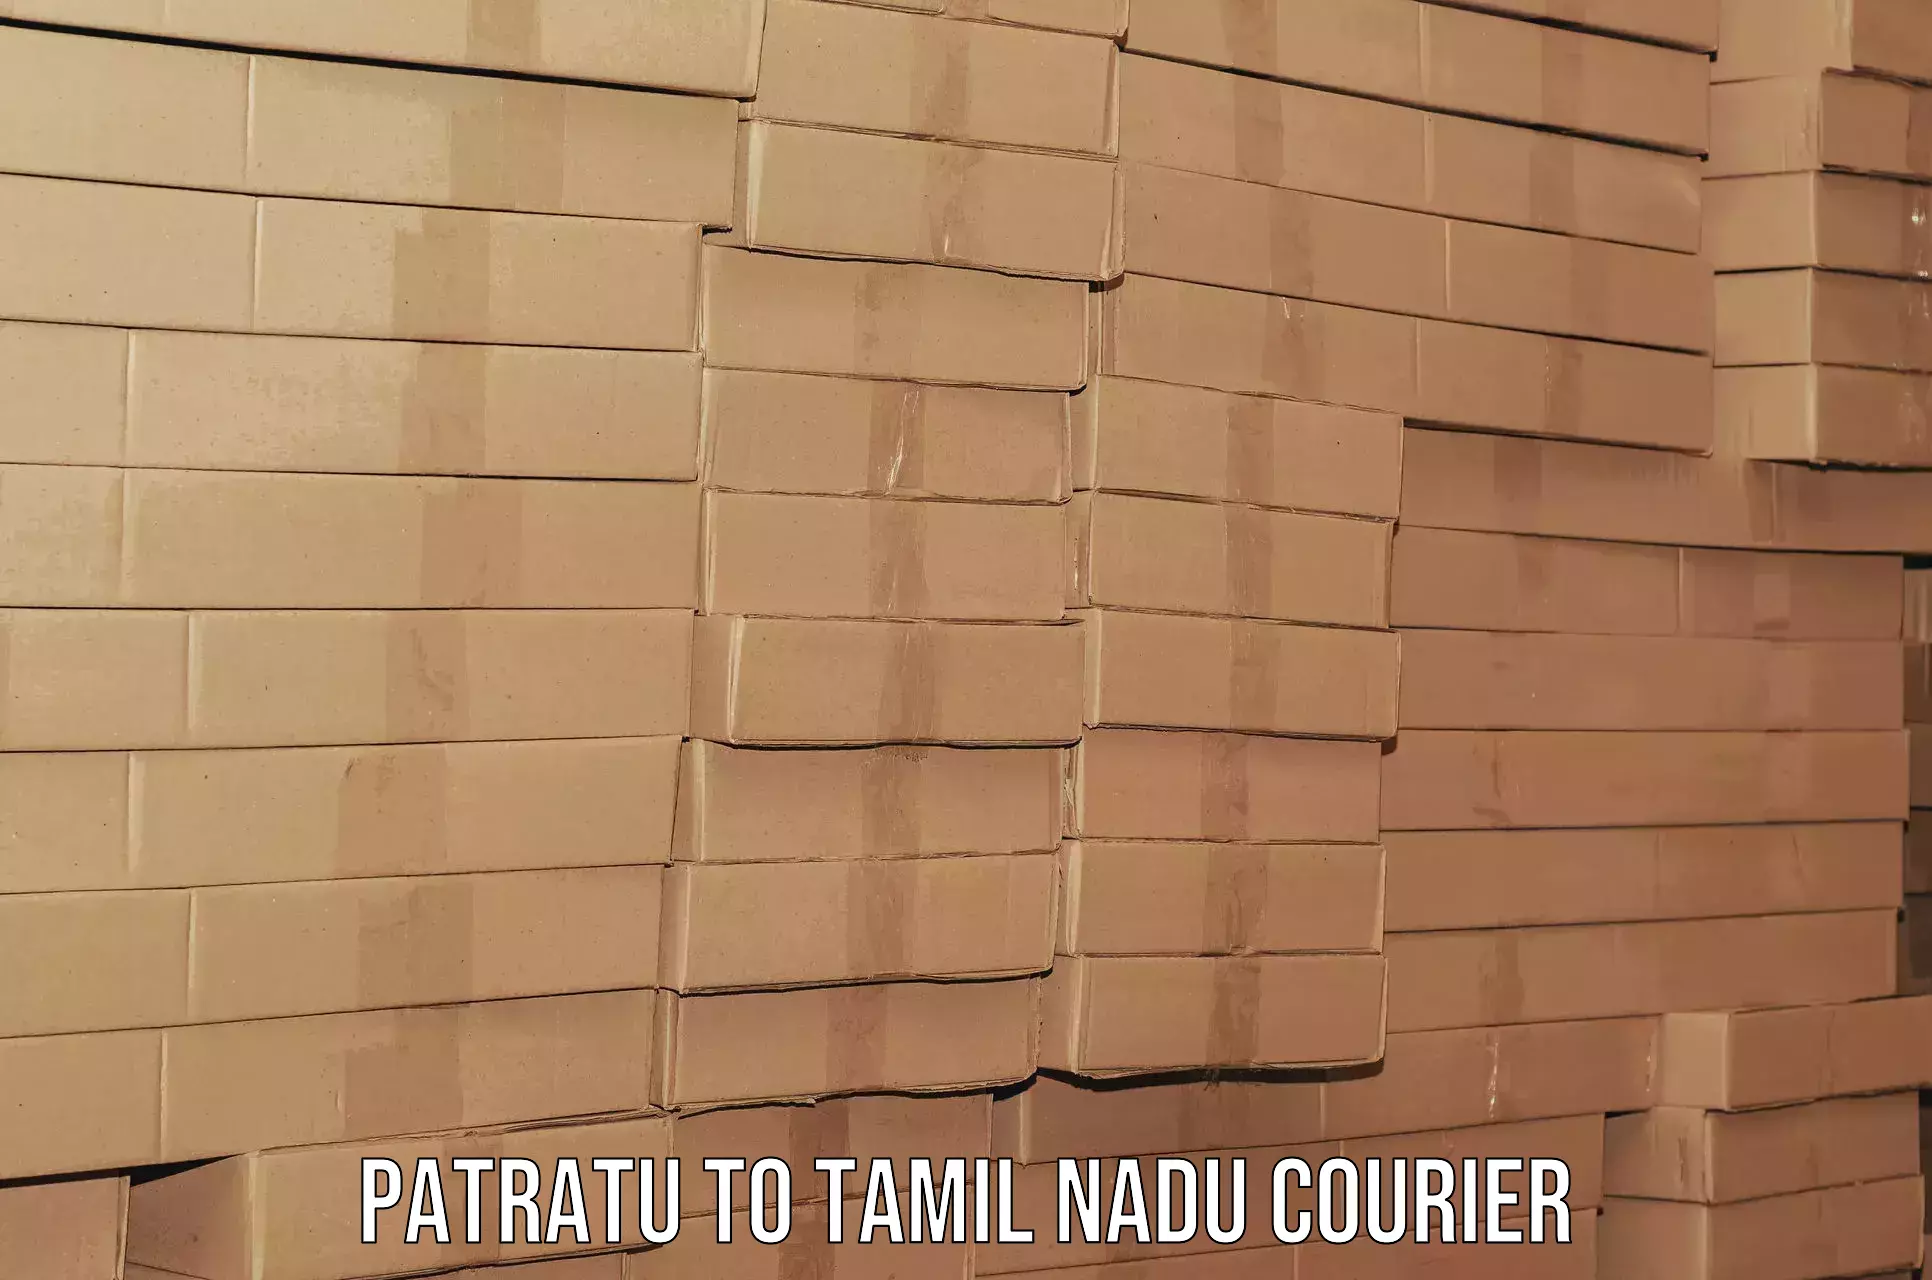 Trusted relocation experts Patratu to Tamil Nadu